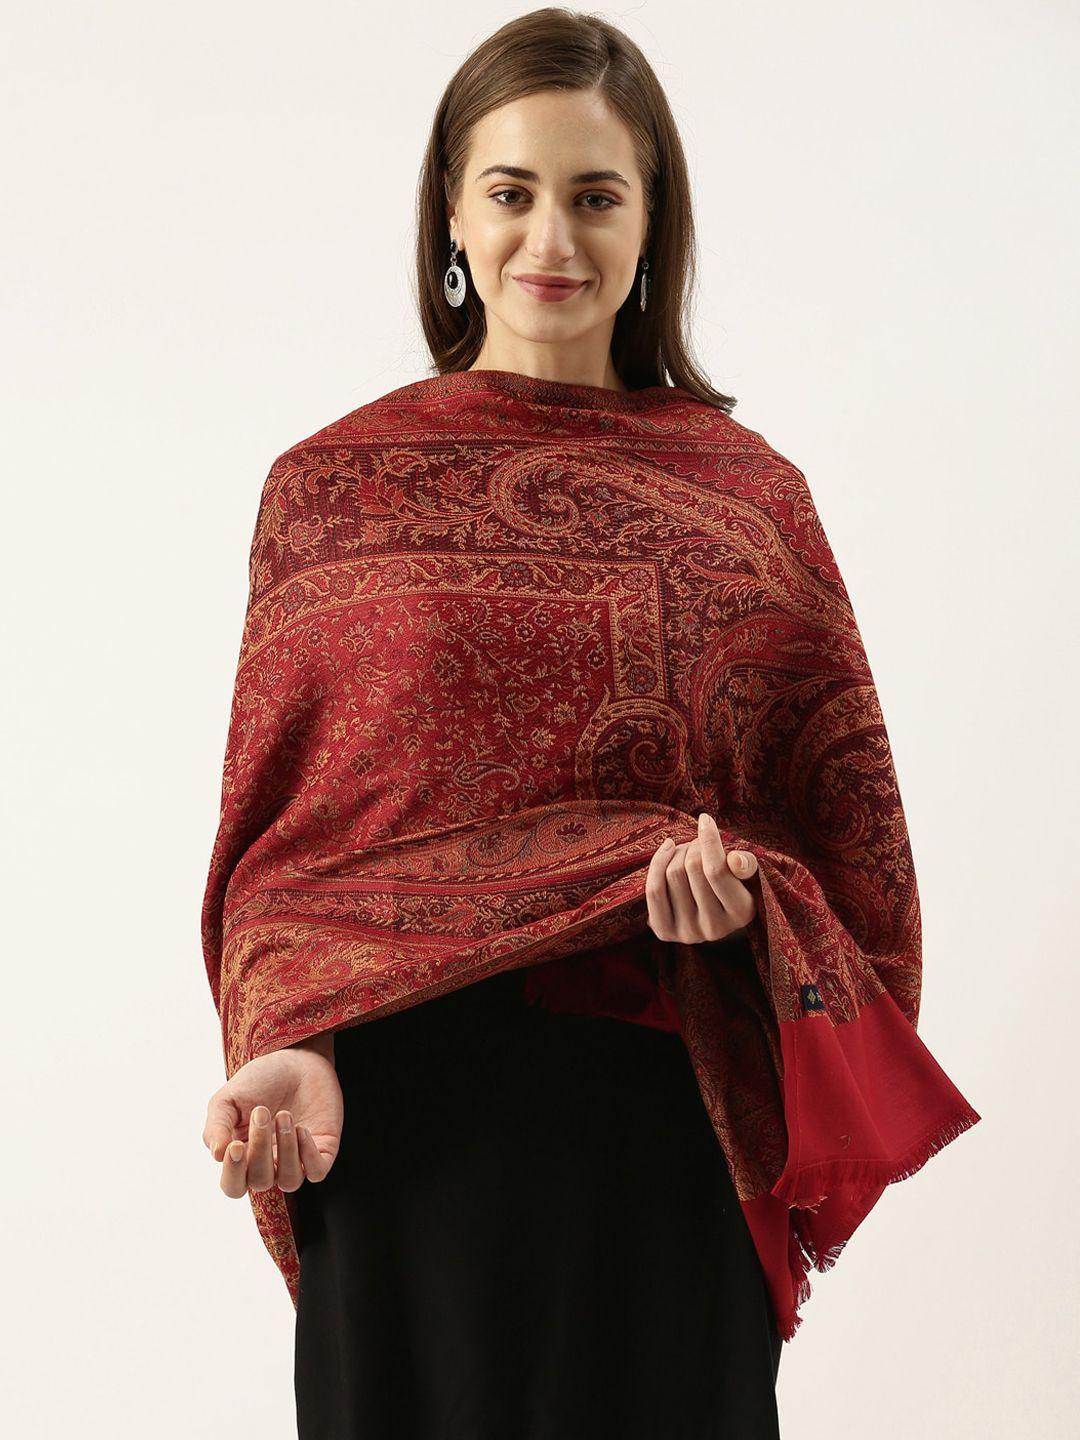 pashmoda women red woven design jamawar shawl